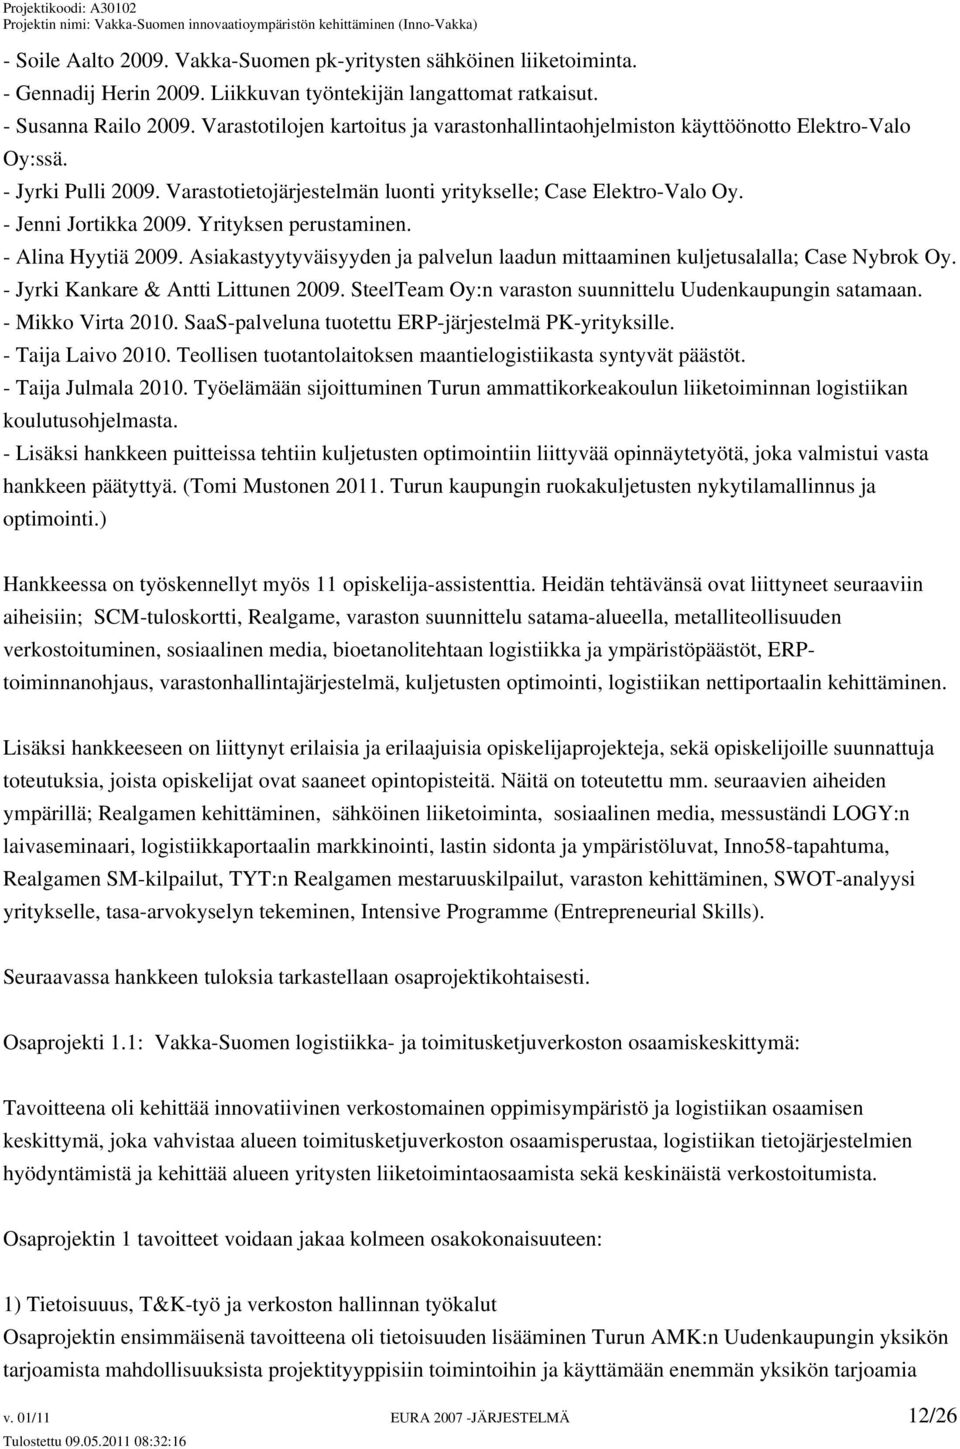 Yrityksen perustaminen. - Alina Hyytiä 2009. Asiakastyytyväisyyden ja palvelun laadun mittaaminen kuljetusalalla; Case Nybrok Oy. - Jyrki Kankare & Antti Littunen 2009.